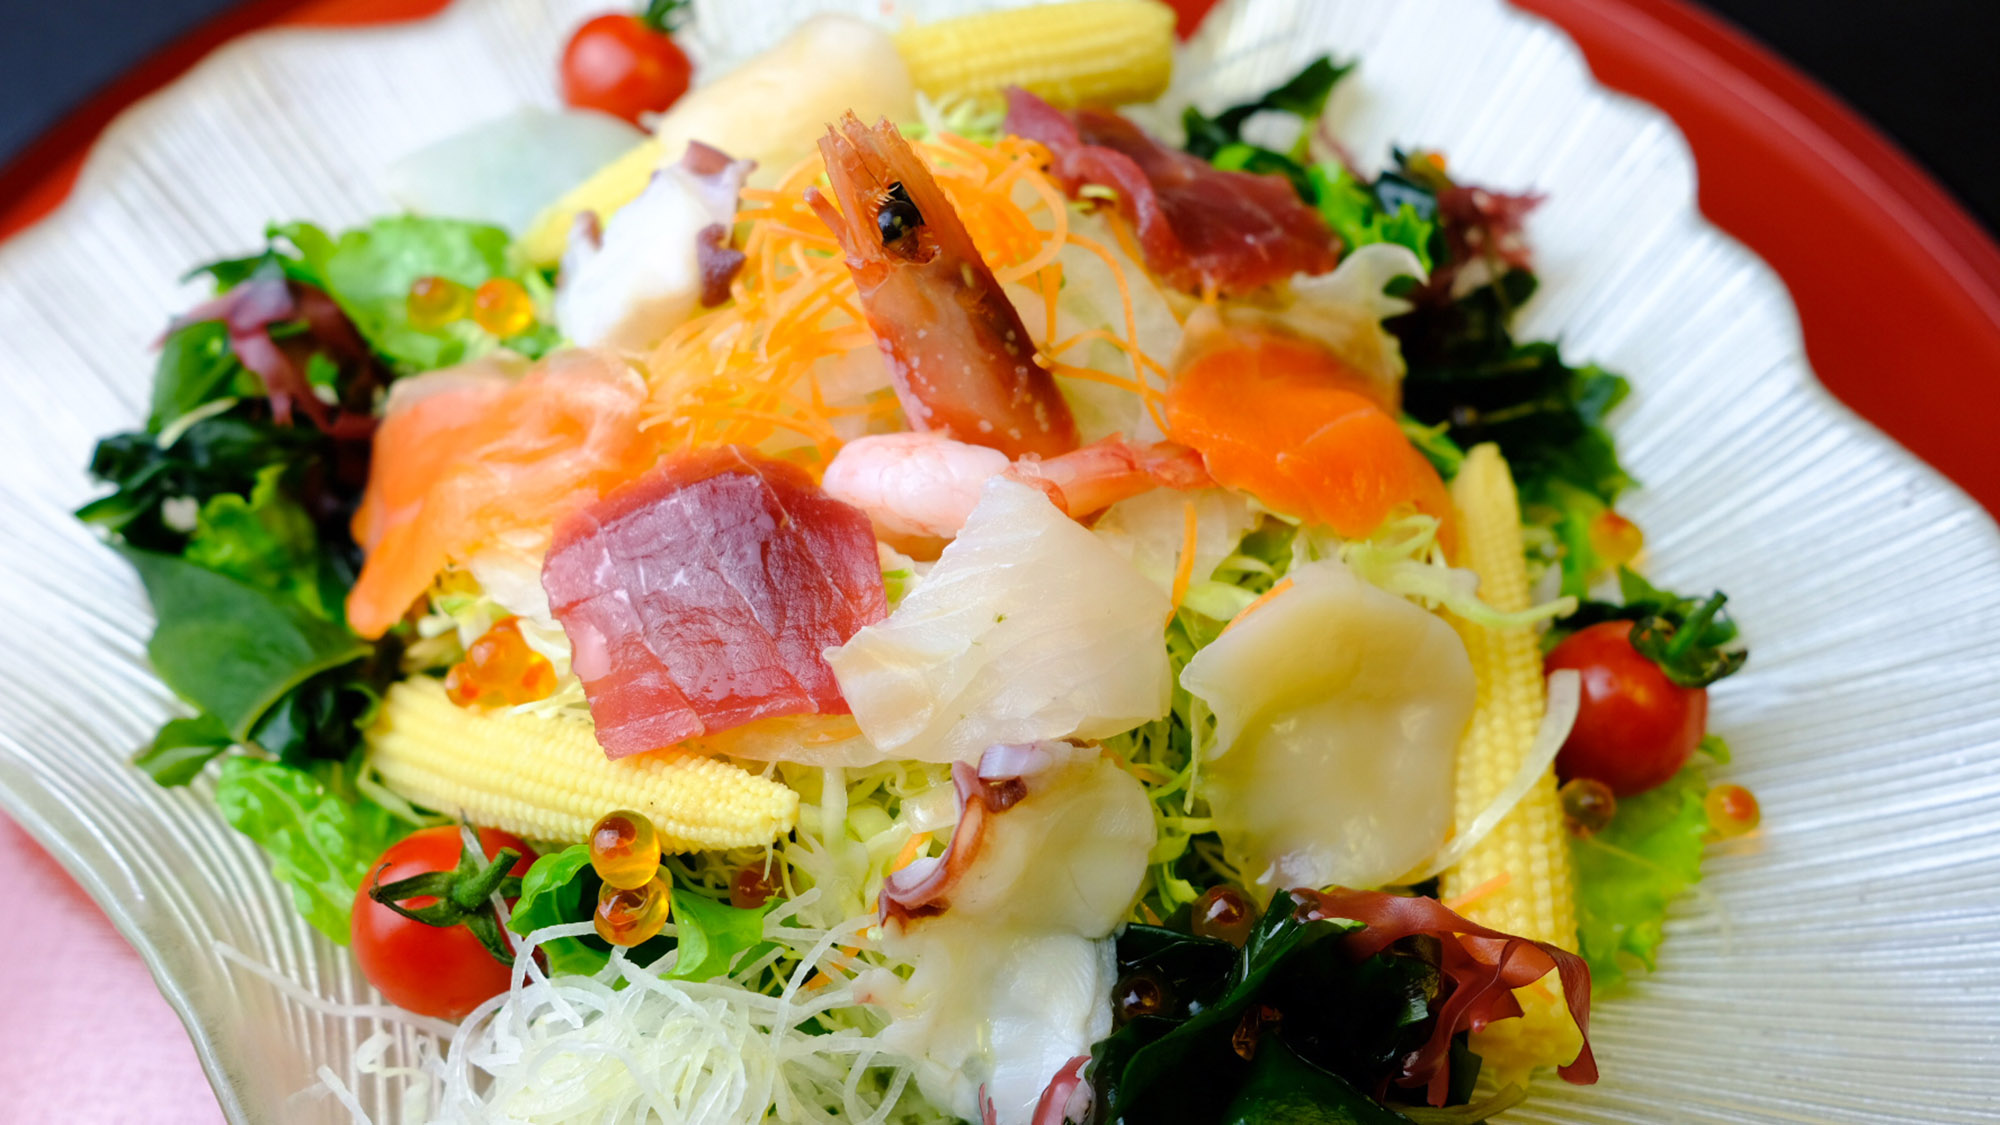 ・【海鮮サラダ】たっぷりの野菜と魚介でヘルシーな一品。目にも鮮やかです